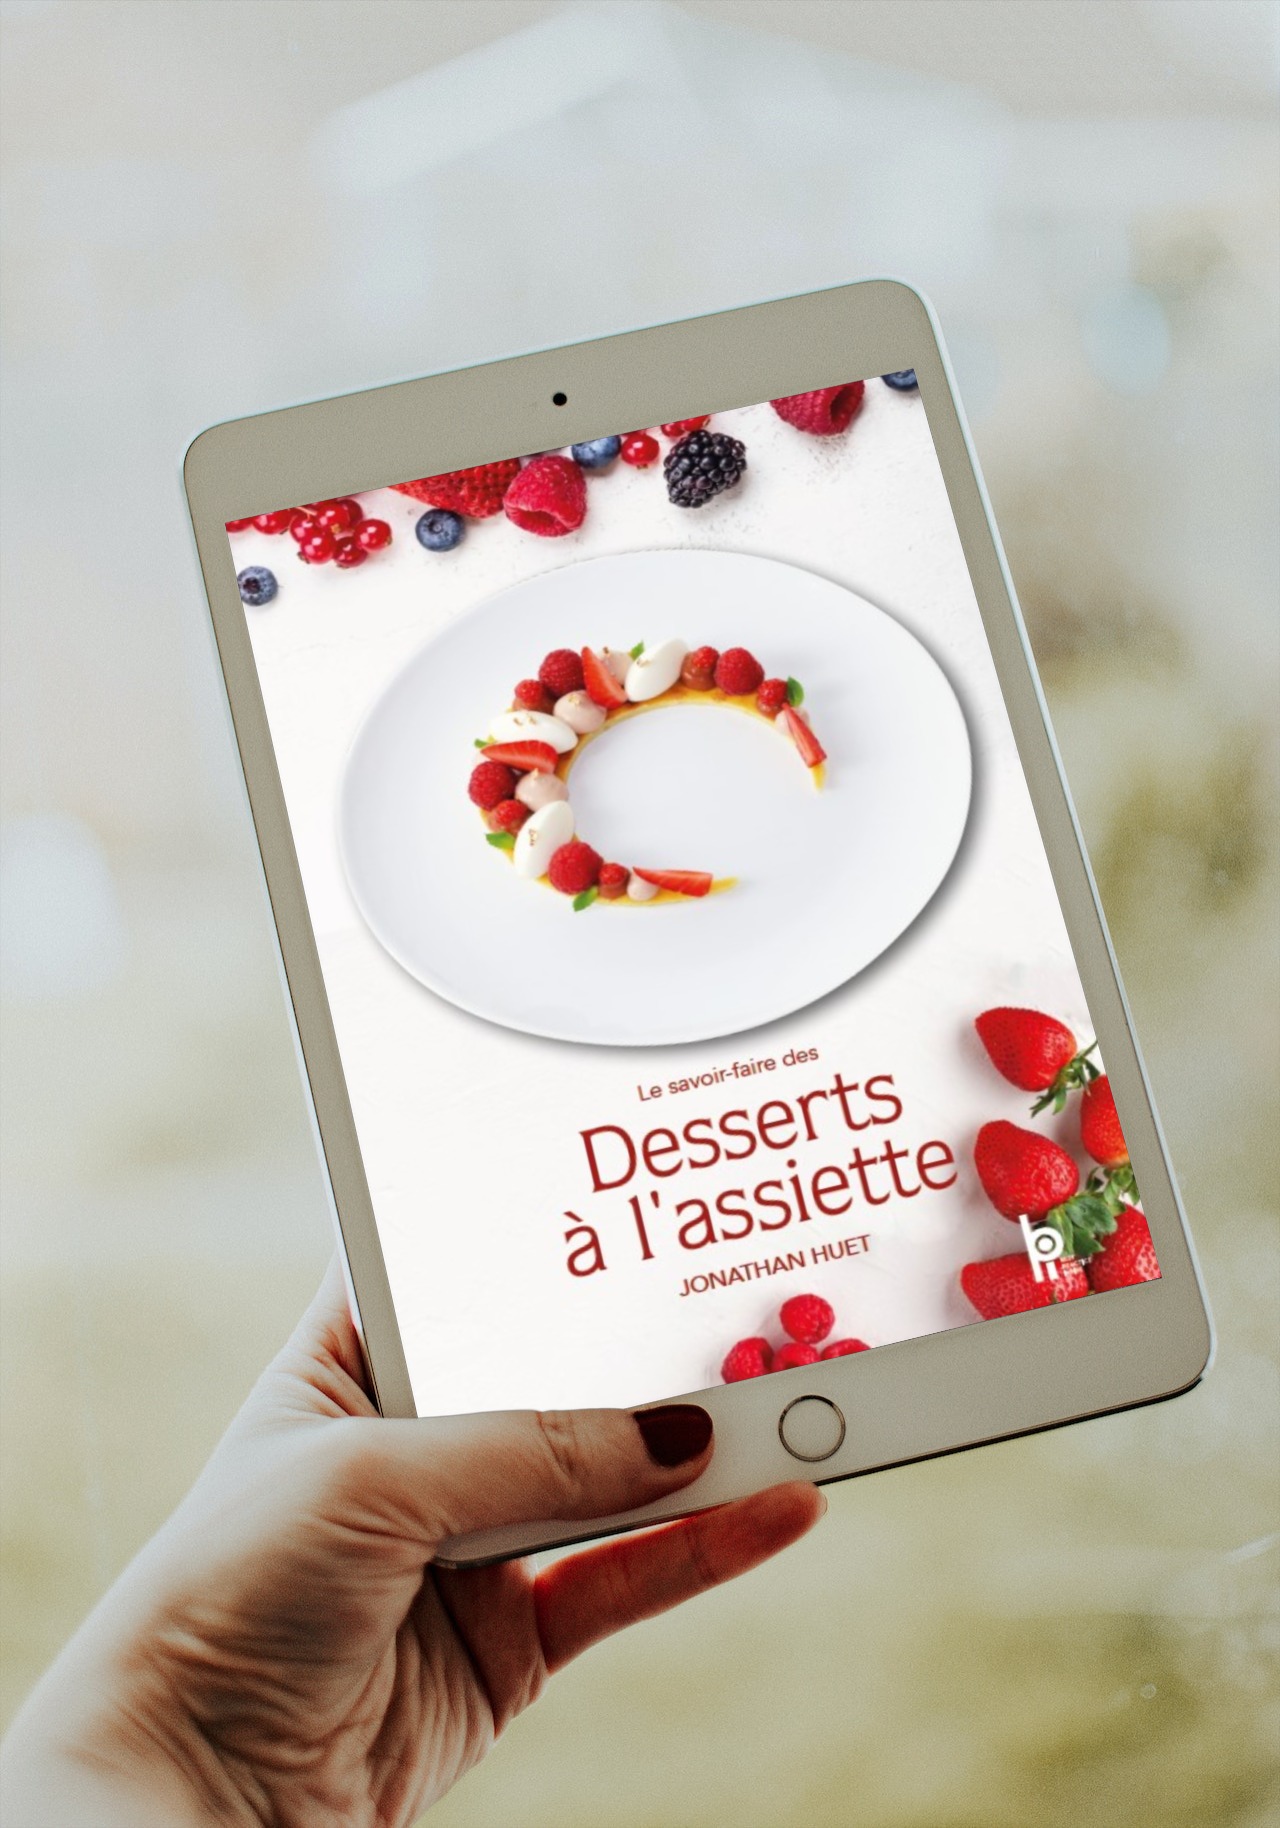 Le Savoir-faire des Desserts à l'Assiette - Accès numérique inclus -  JONATHAN HUET (EAN13 : 9782857089537), BPI, Best Practice Inside